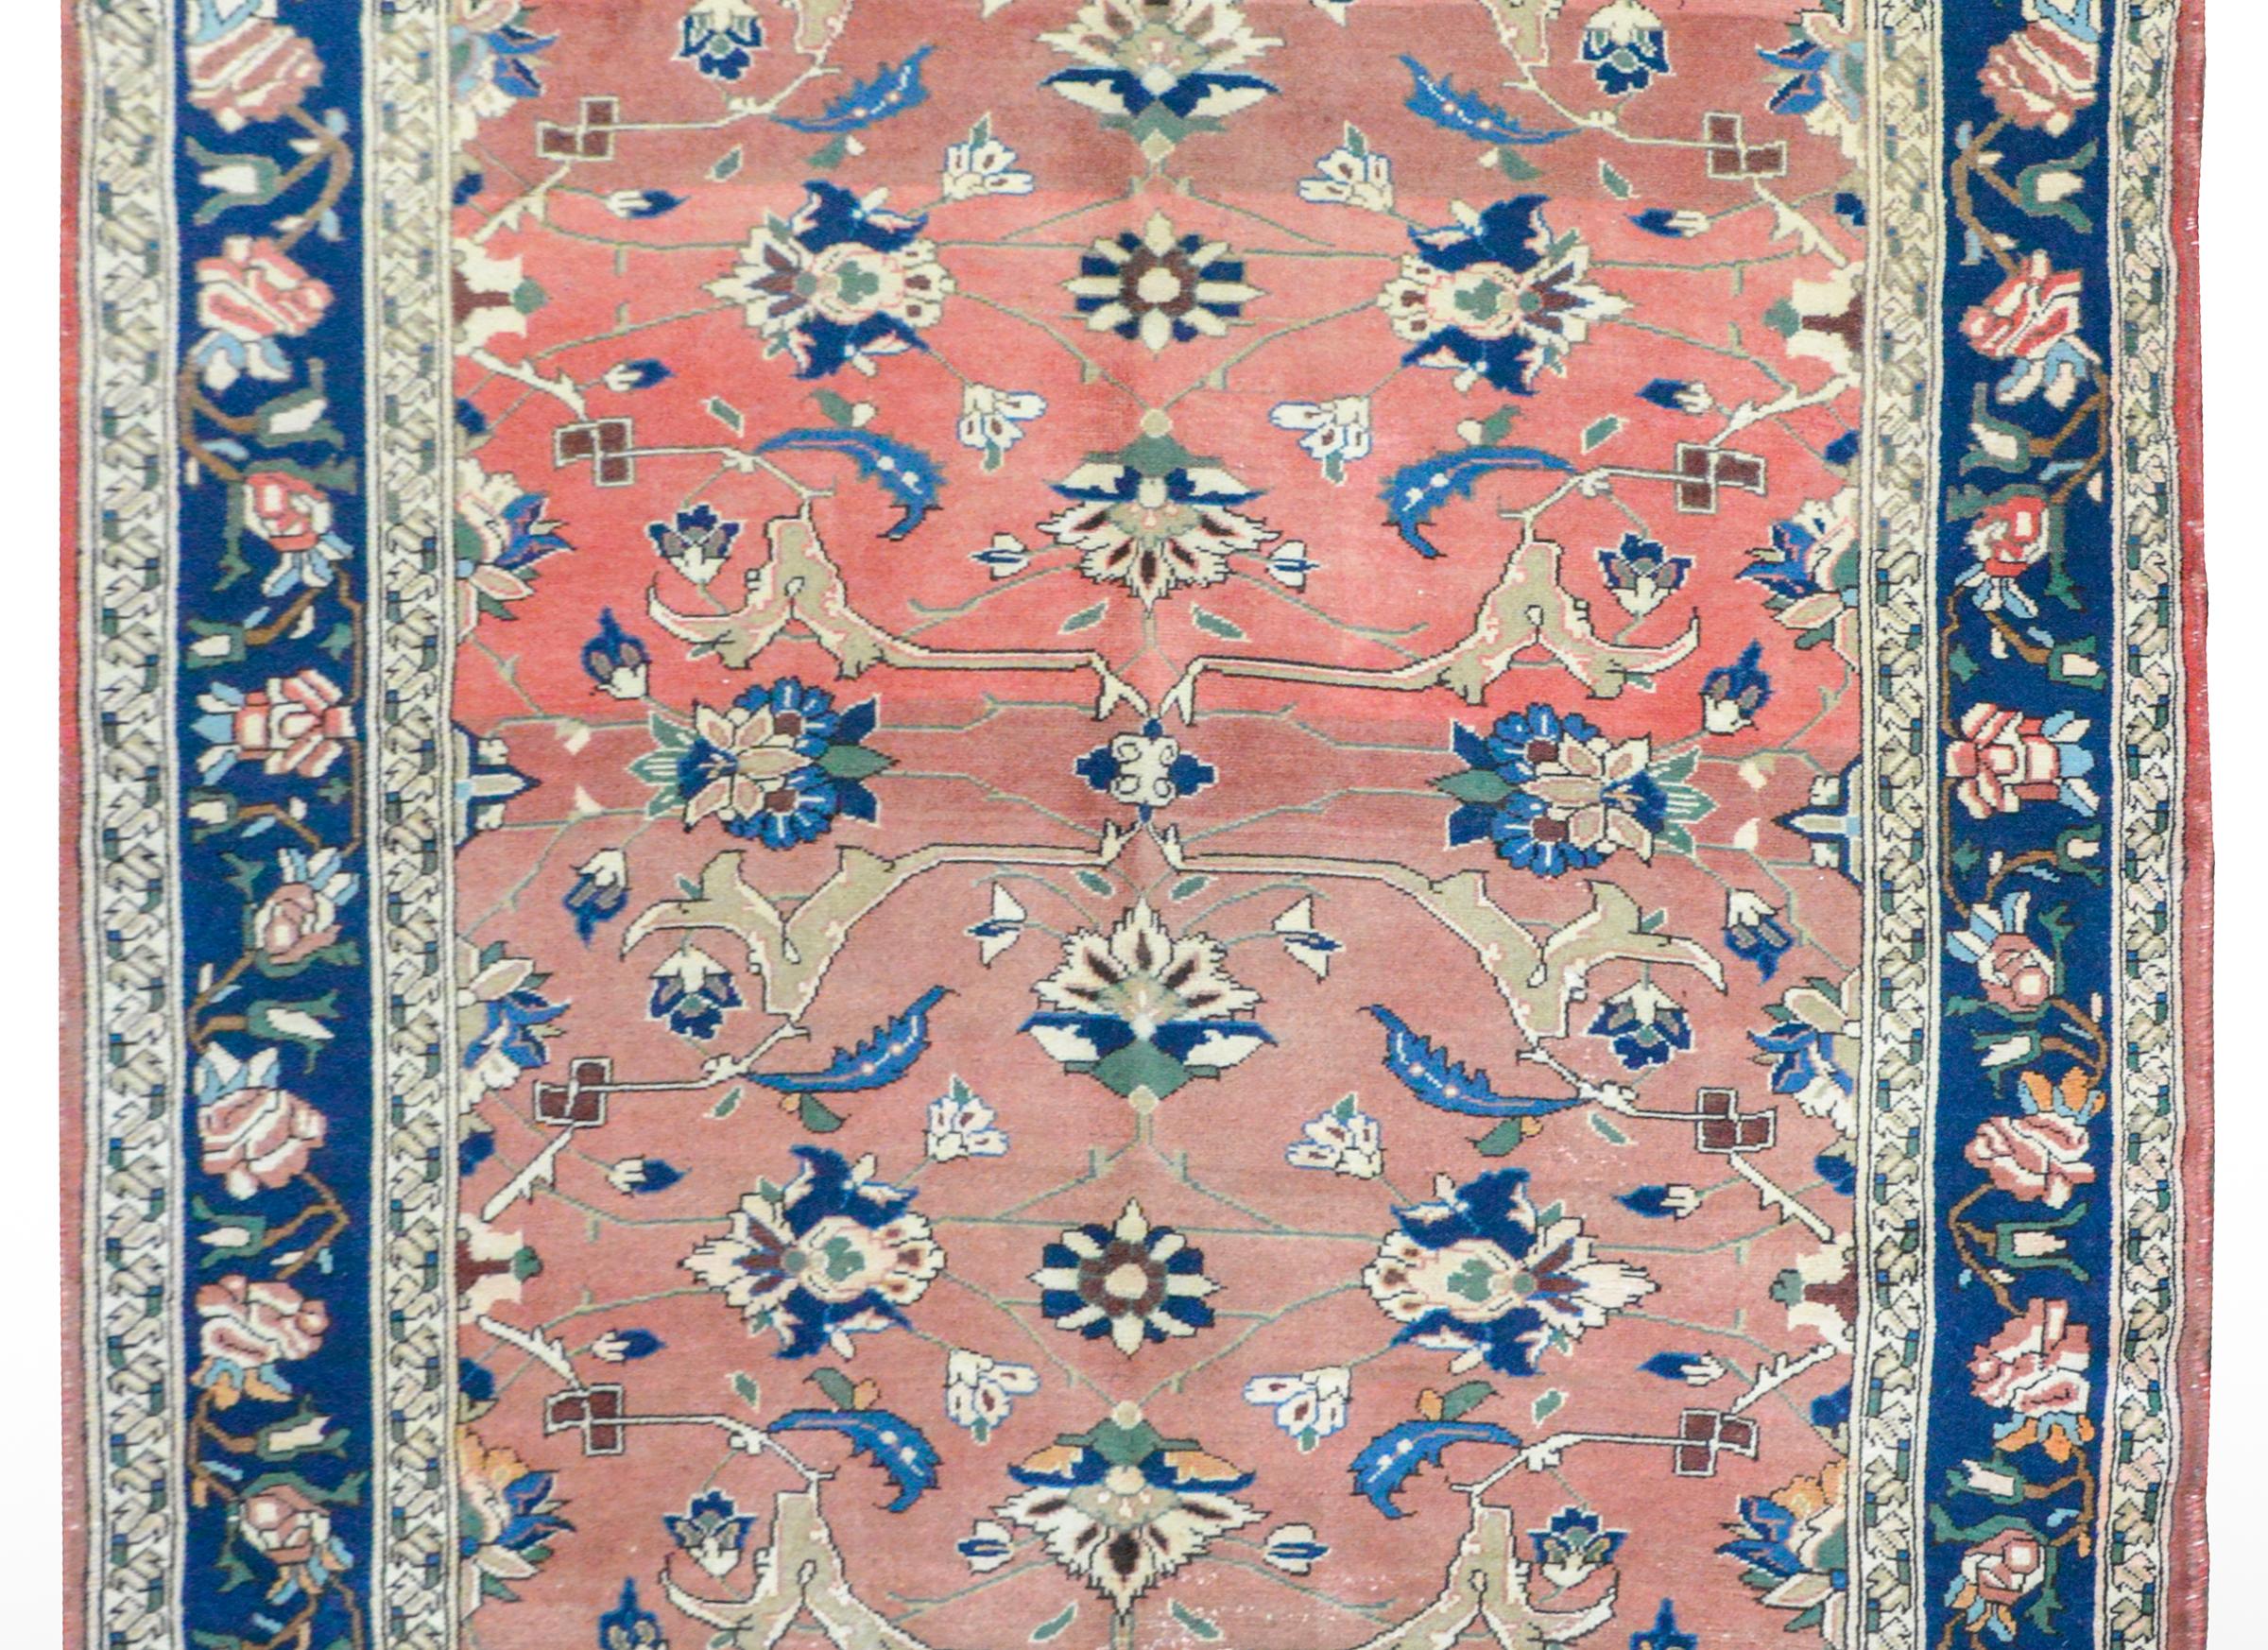 Ein hervorragender persischer Lilihan-Teppich aus dem frühen 20. Jahrhundert mit einem fein gezeichneten Blumenmuster aus heller und dunkler indigoblauer, cremefarbener, weißer und grüner Wolle auf einem schönen, korallenroten Hintergrund. Die